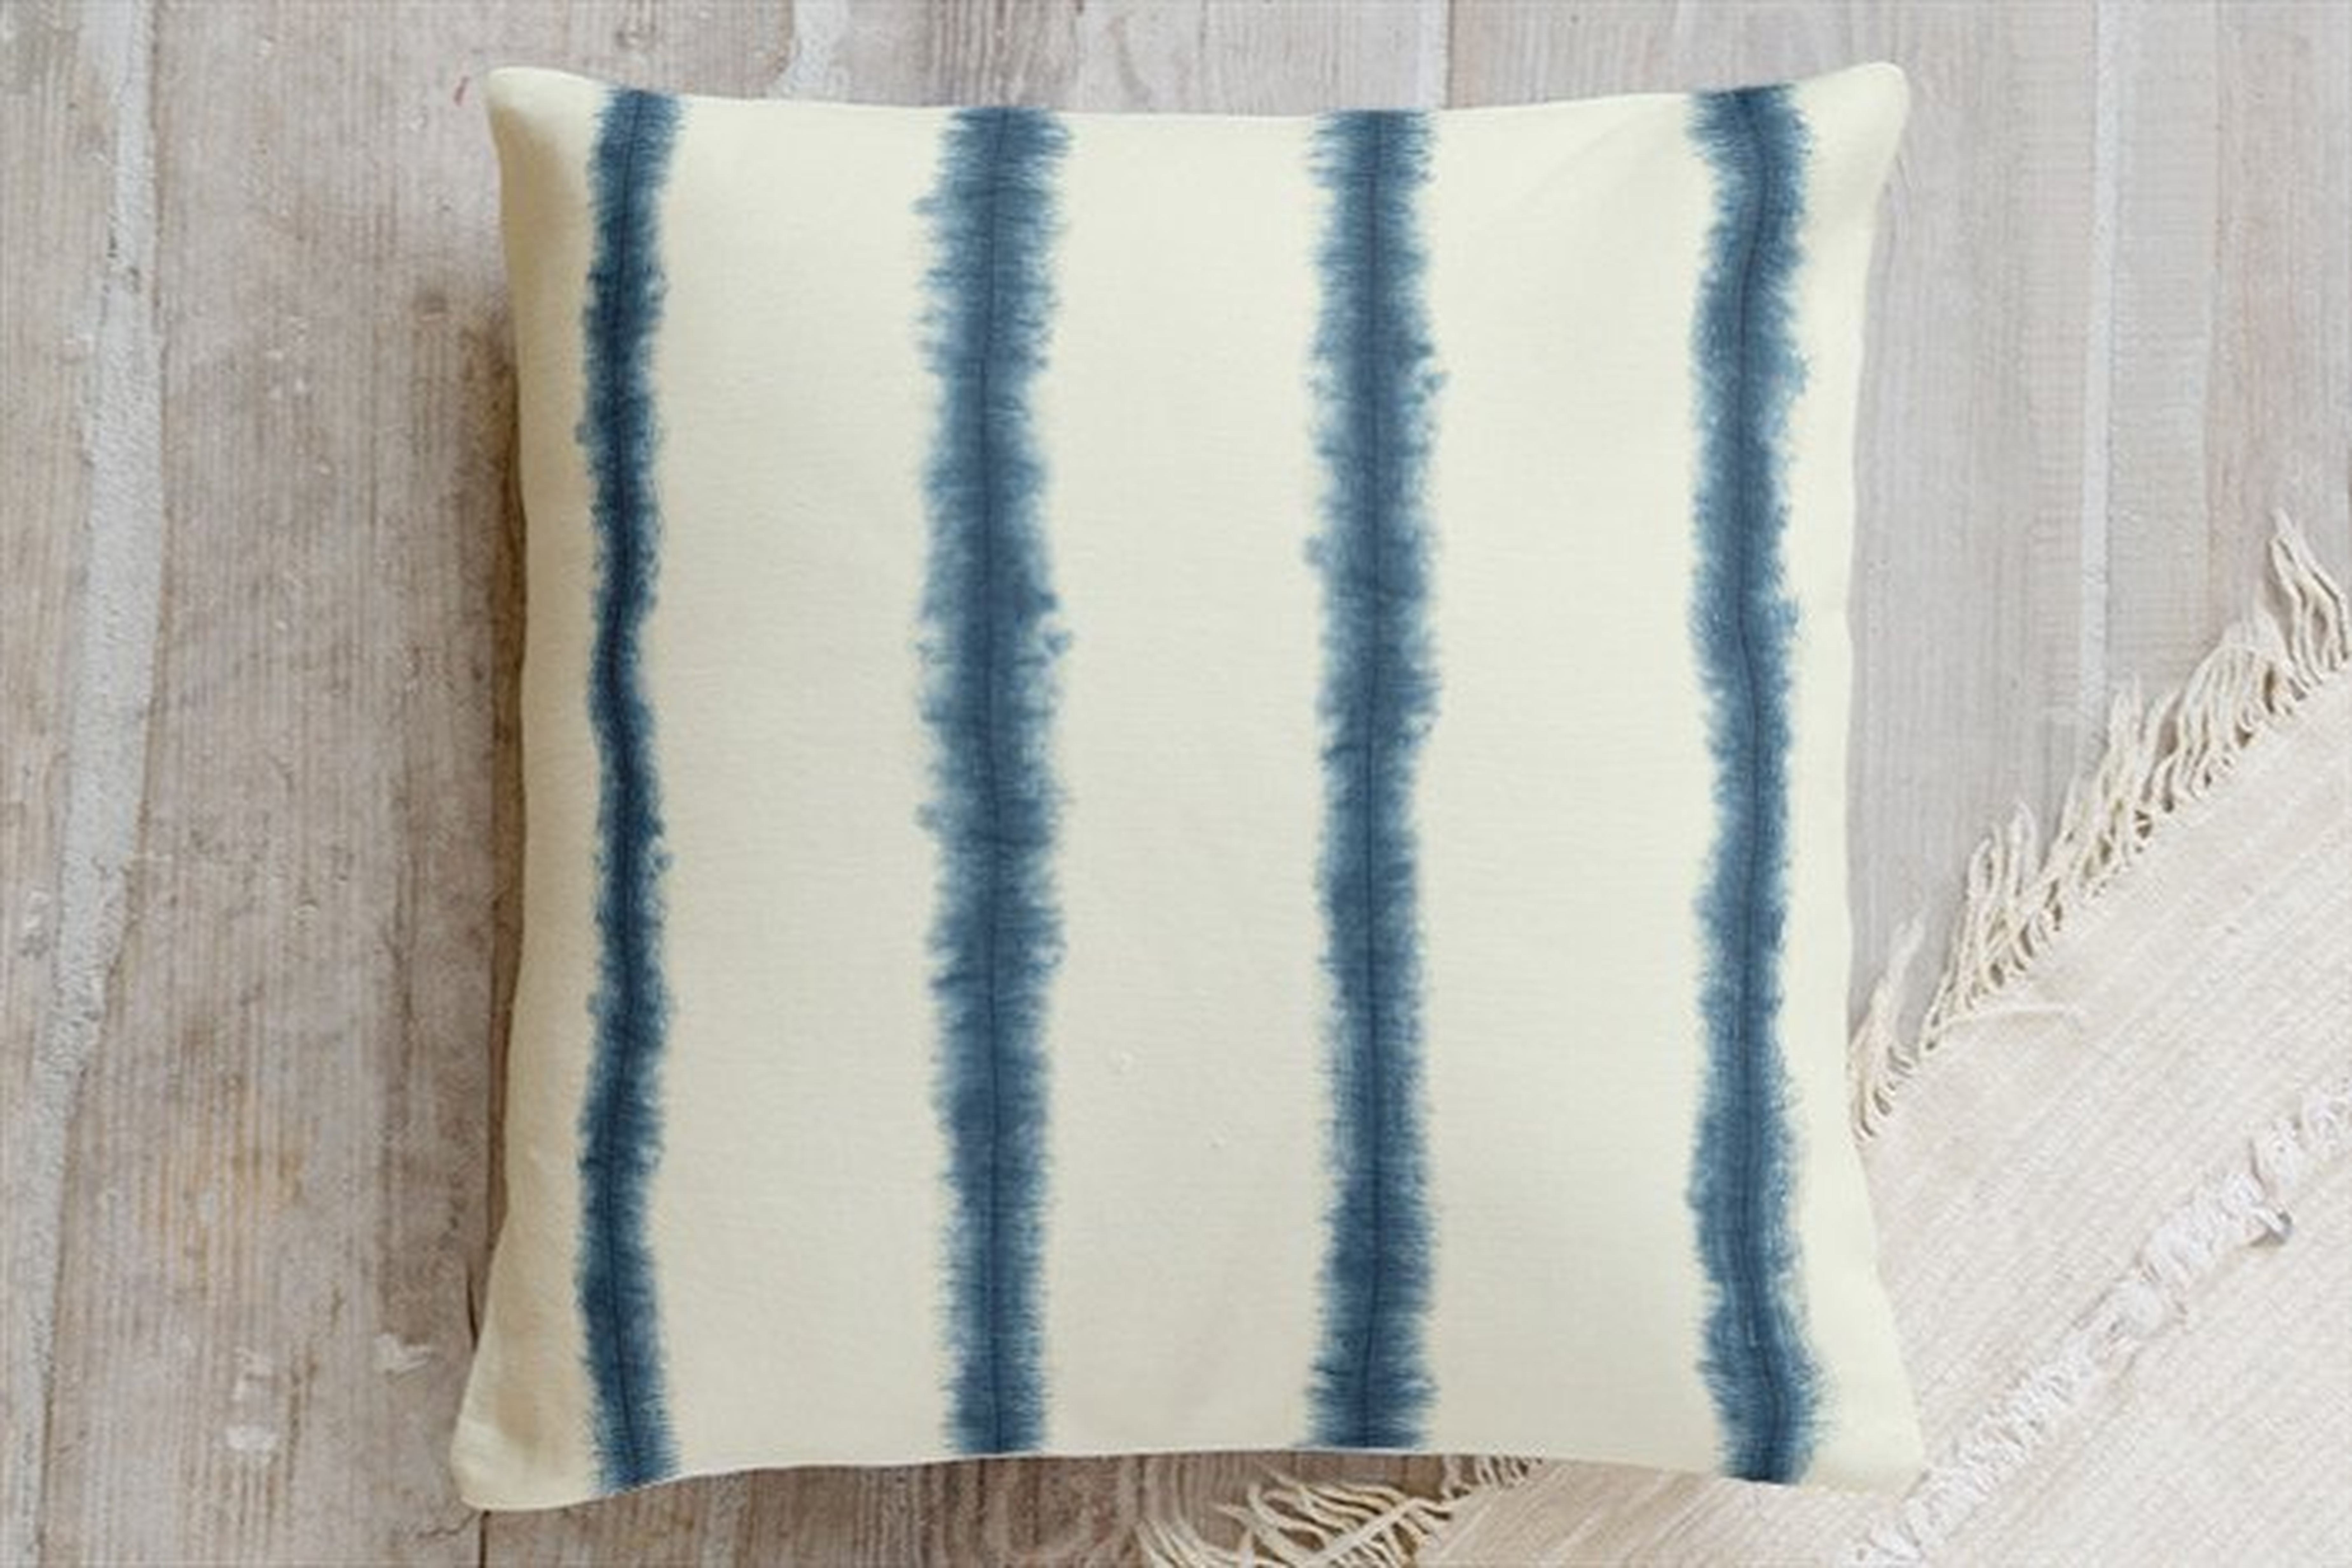 hand-dyed shibori stripes pillow - Indigo - 18"x18" - Minted